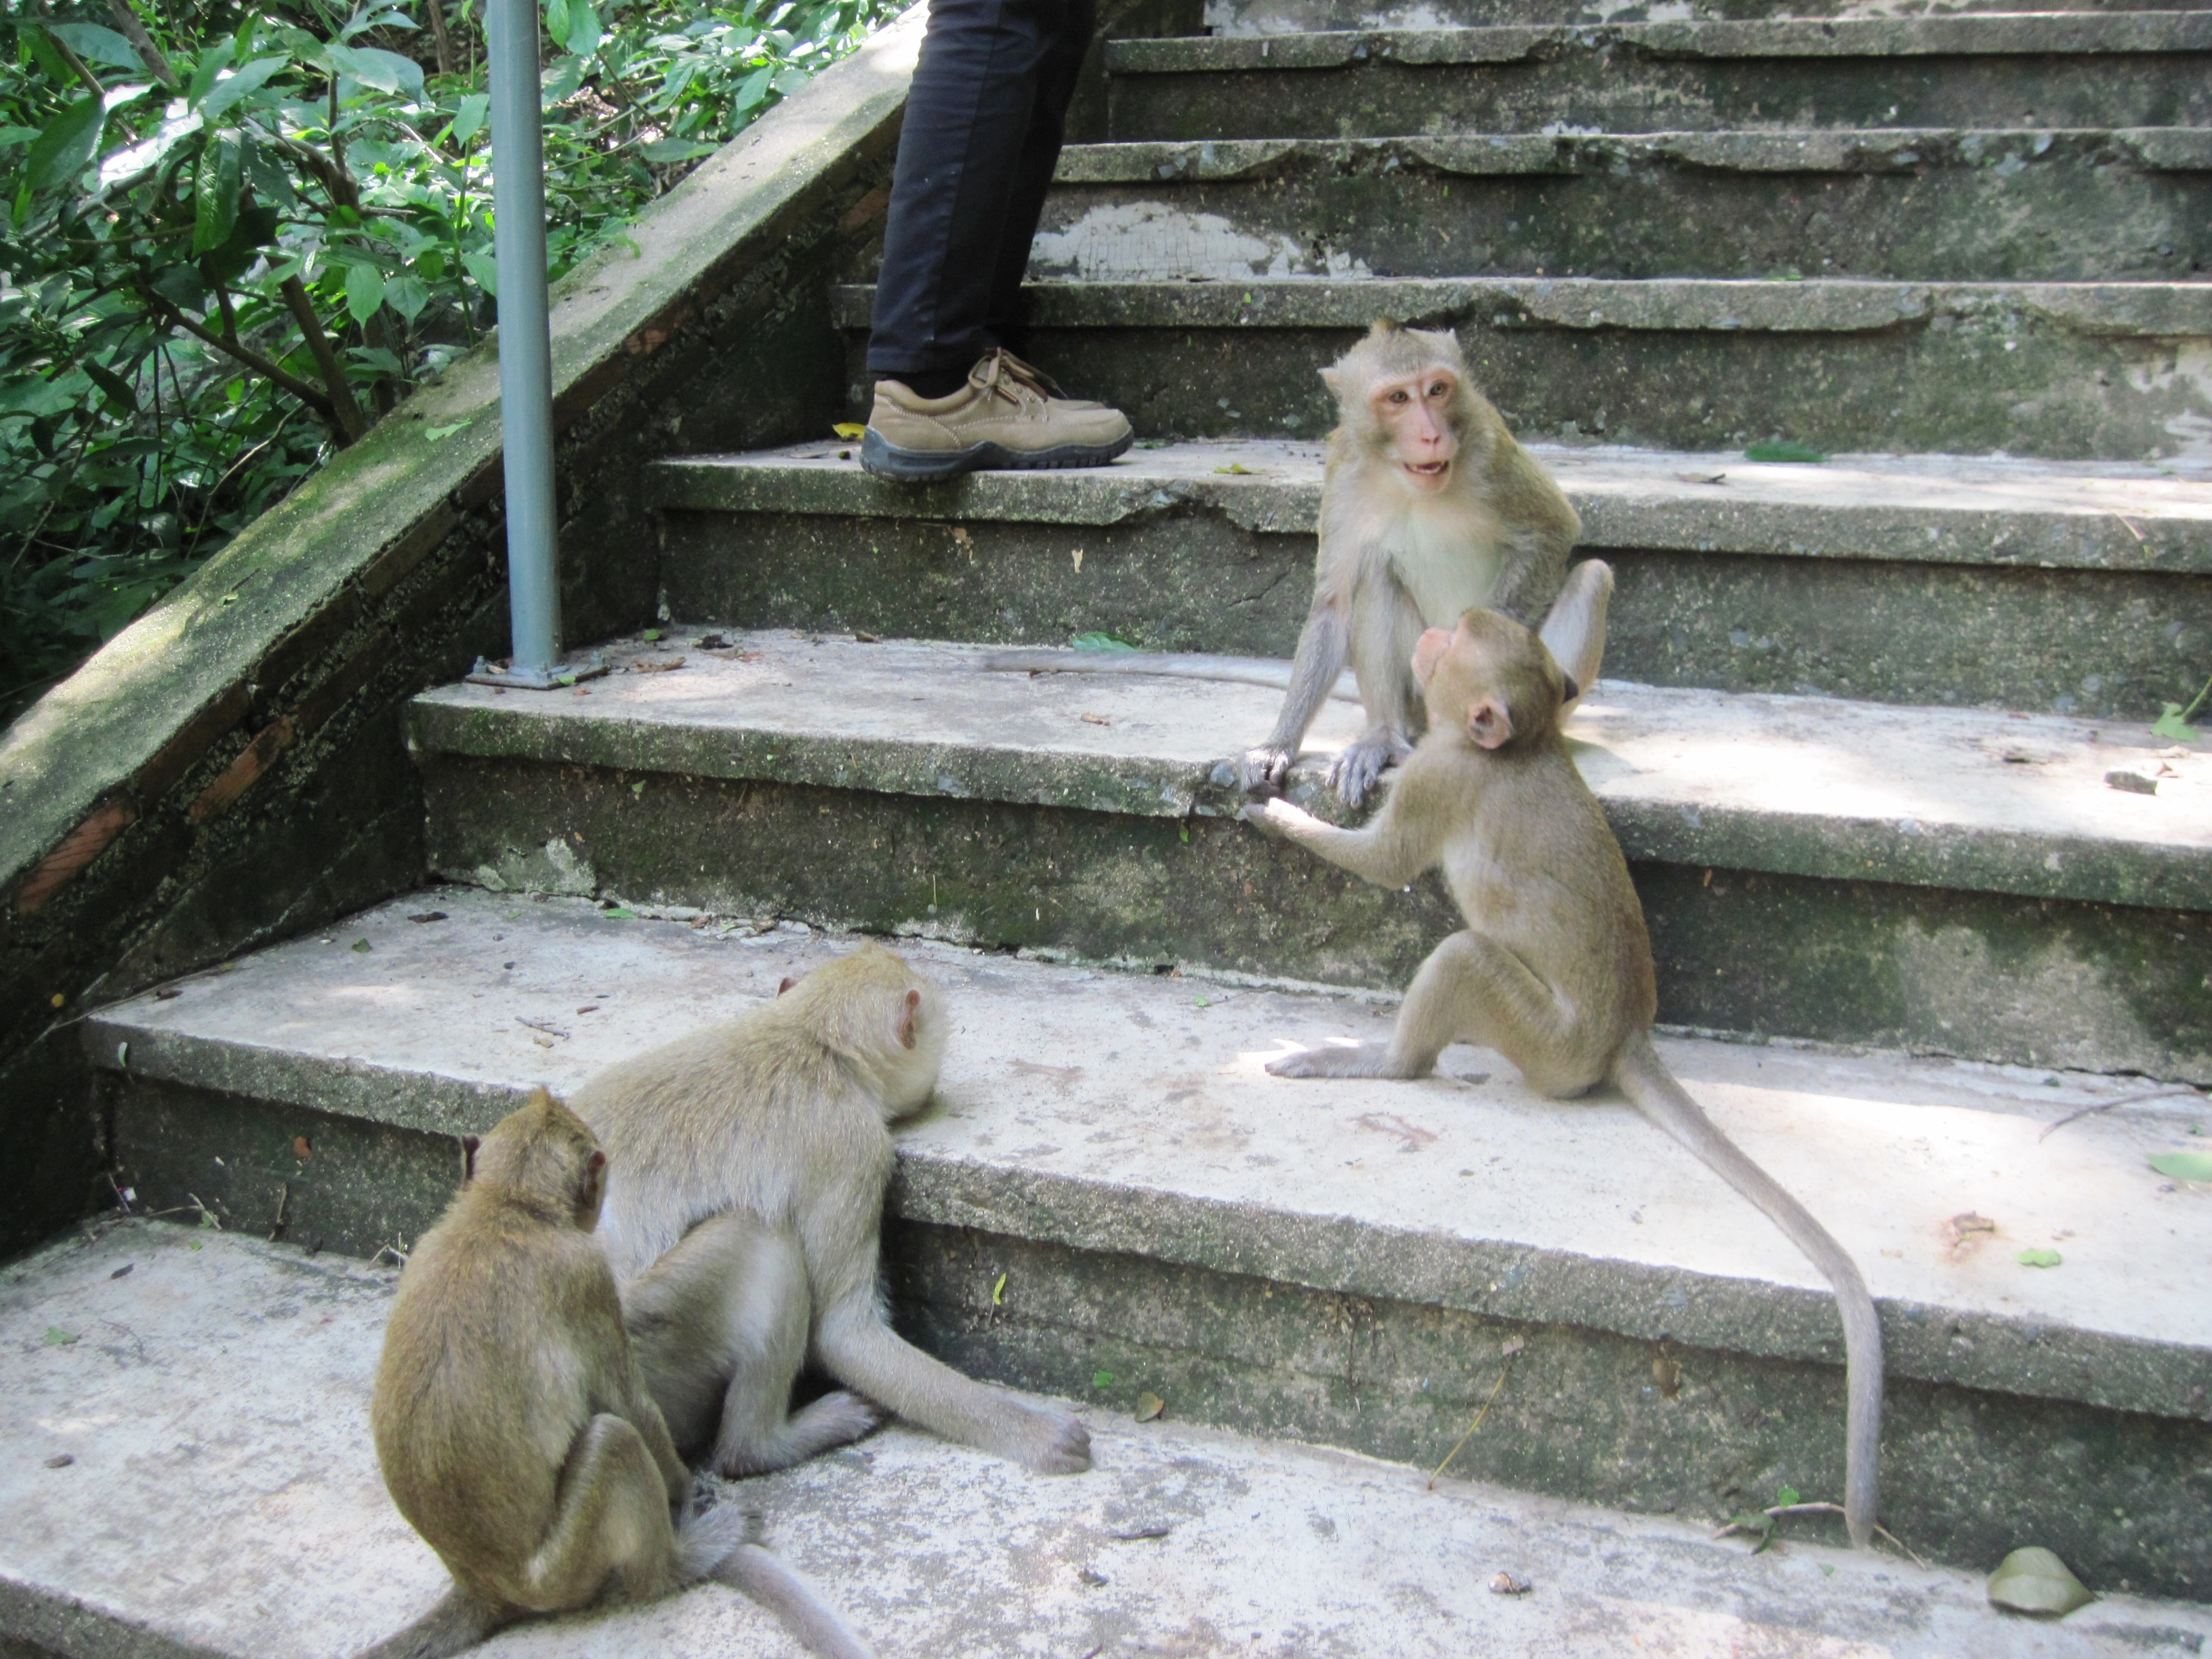 Temple Cynomolgus monkeys at play